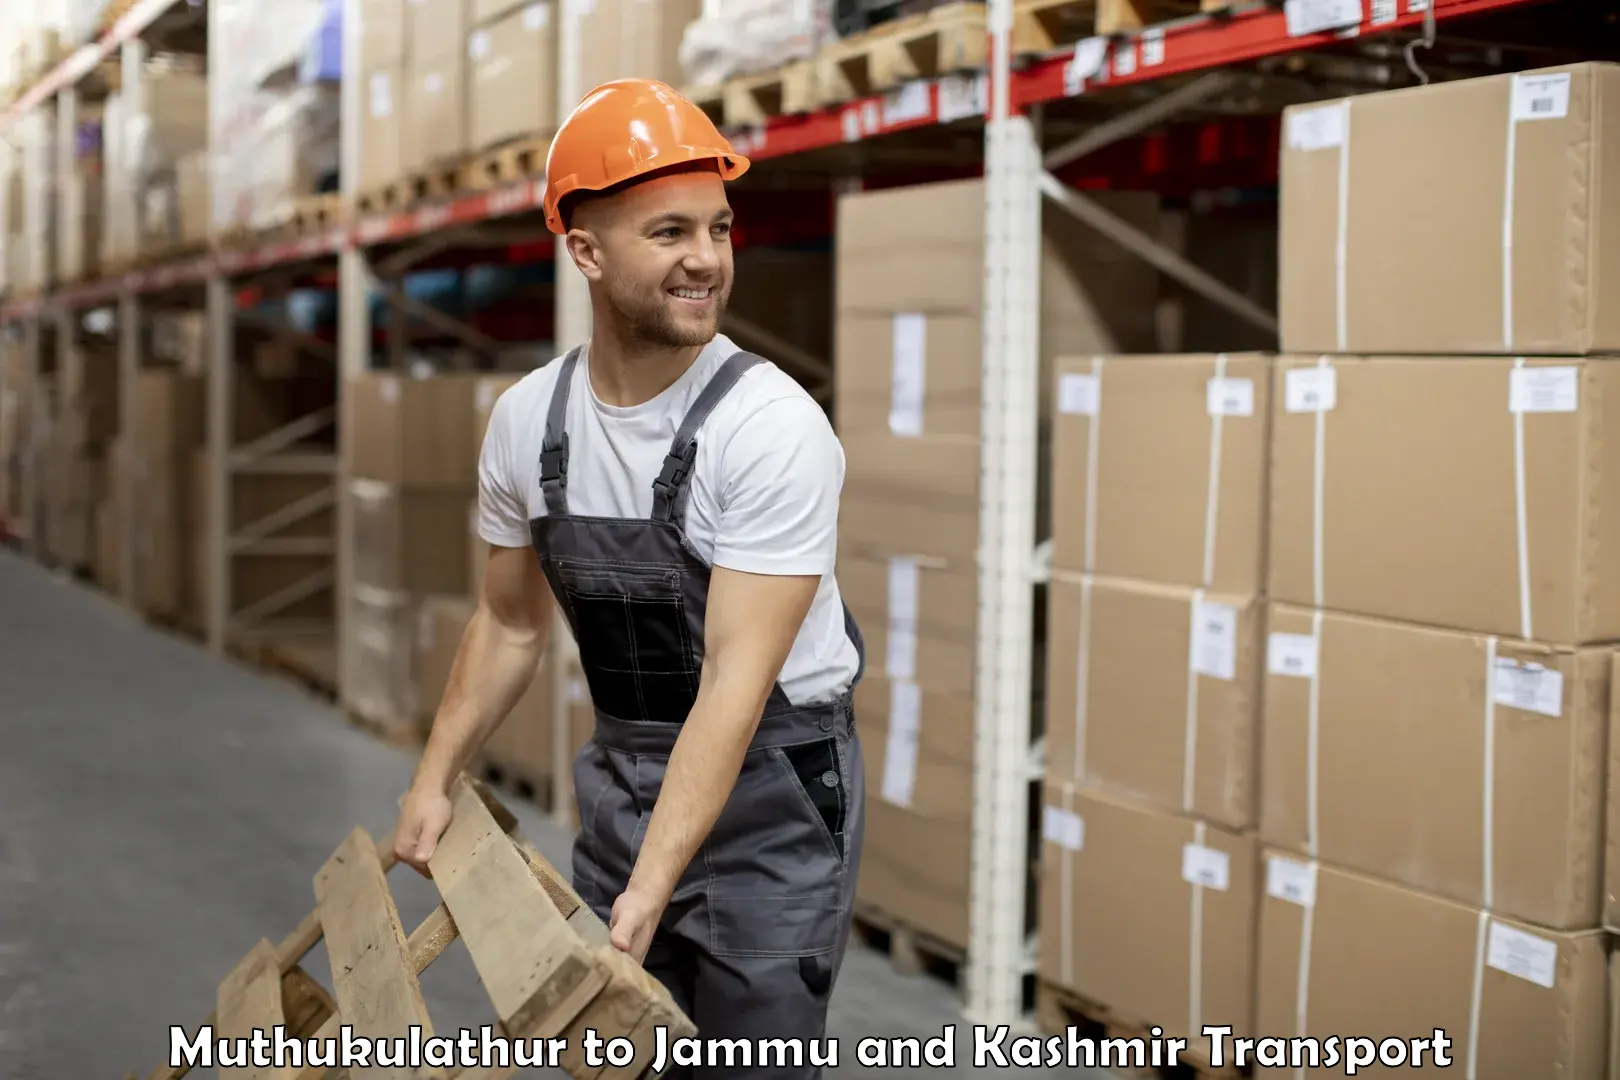 Shipping partner Muthukulathur to Jammu